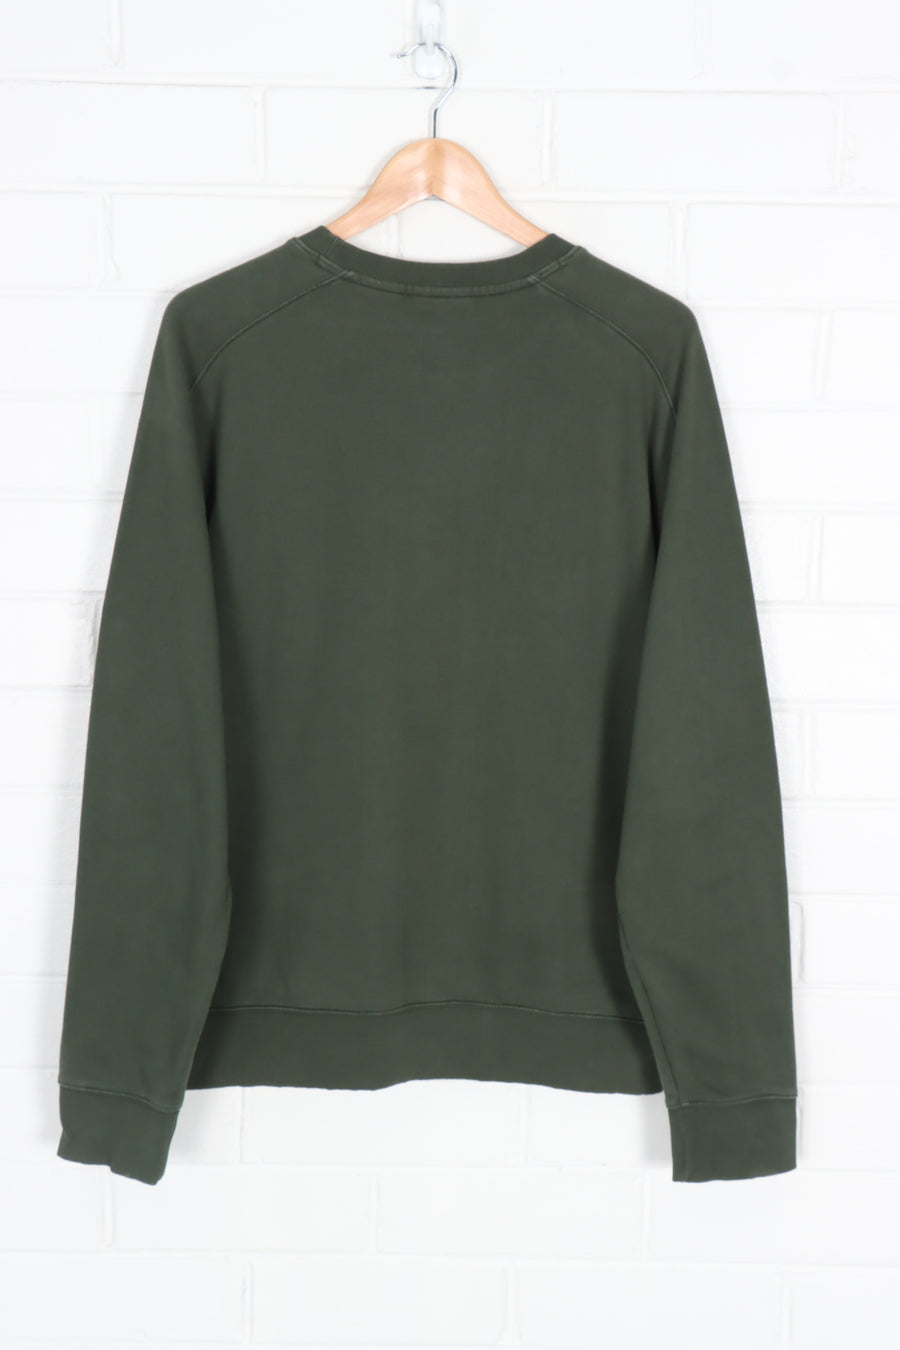 TIMBERLAND Forest Green & Orange Sweatshirt (XL)